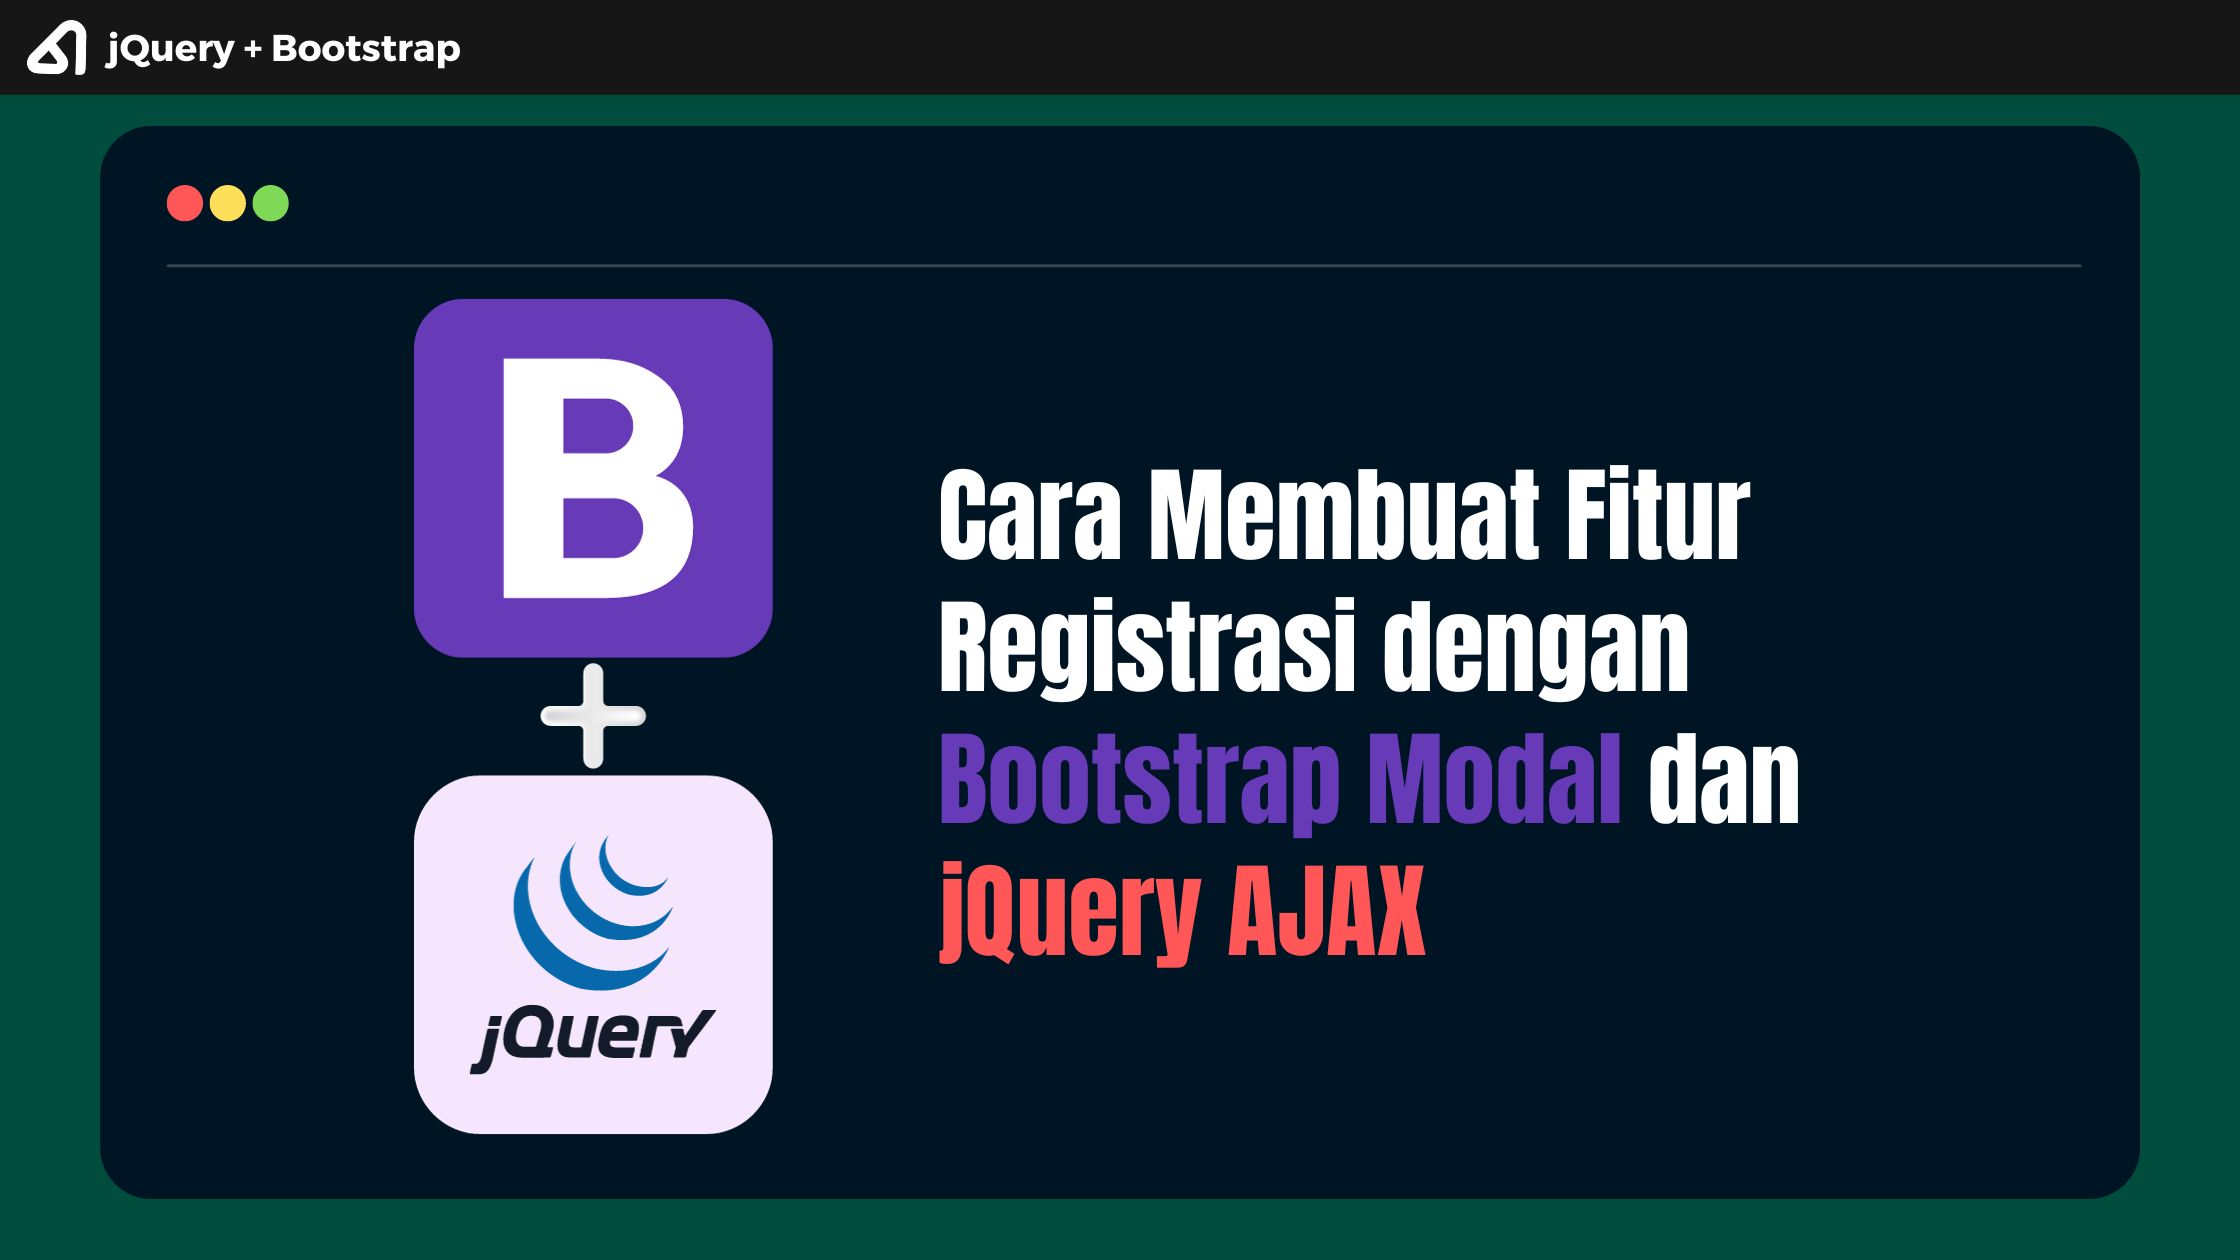 Cara Membuat Fitur Registrasi dengan menggunakan Bootstrap Modal dan jQuery AJAX